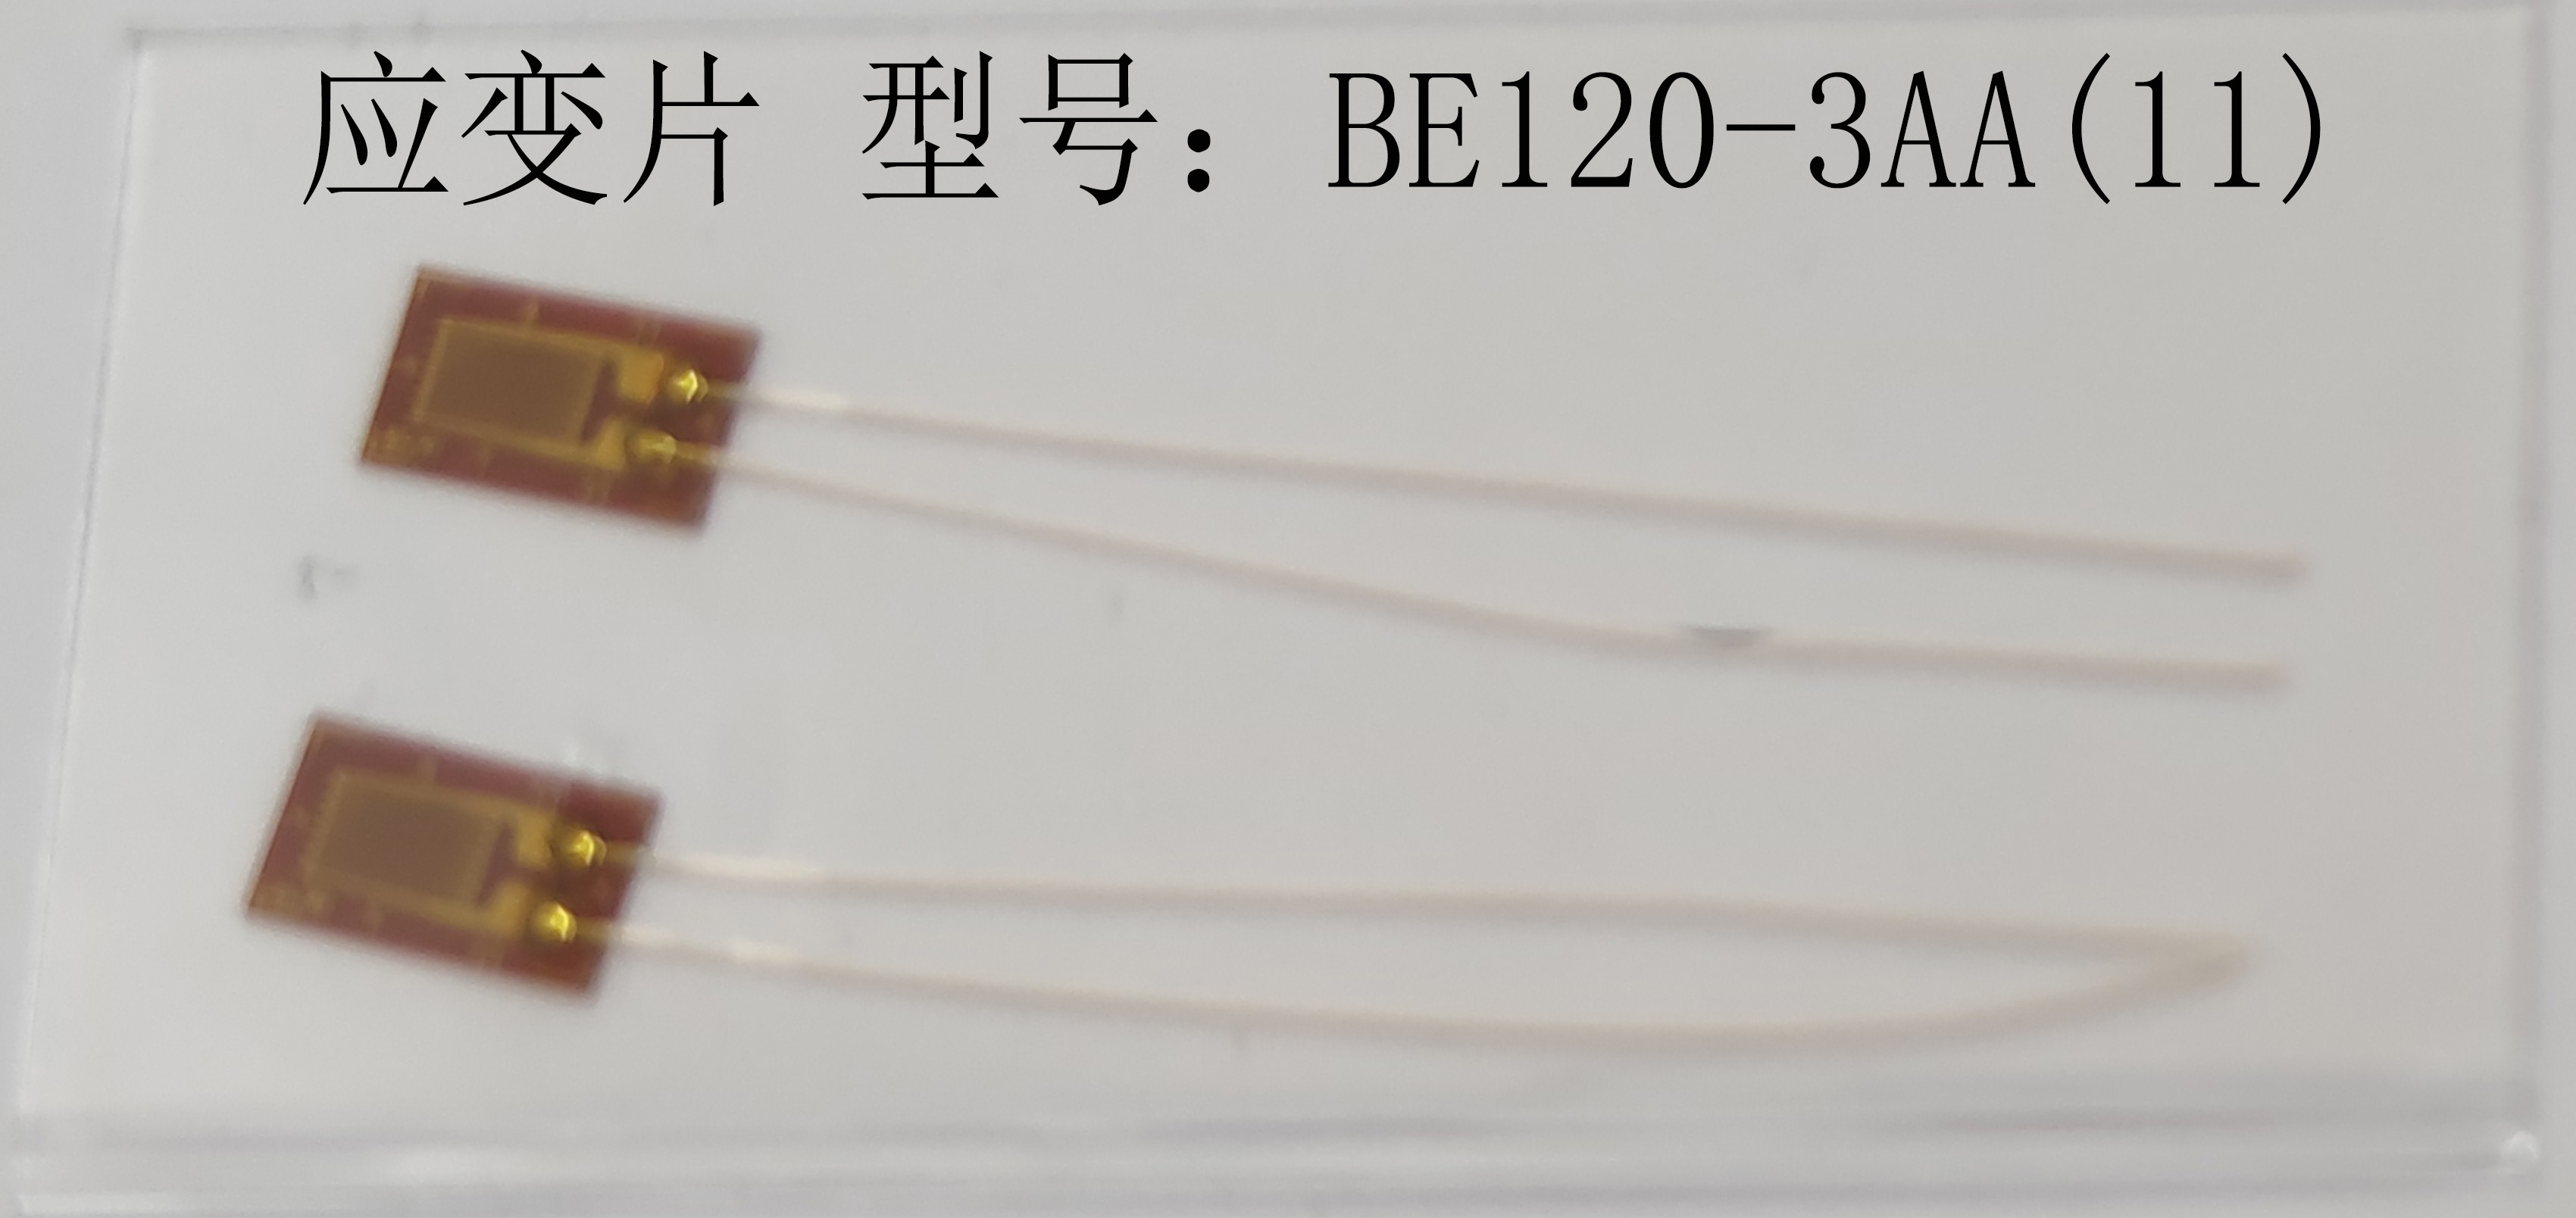 BE120-3AA(11)